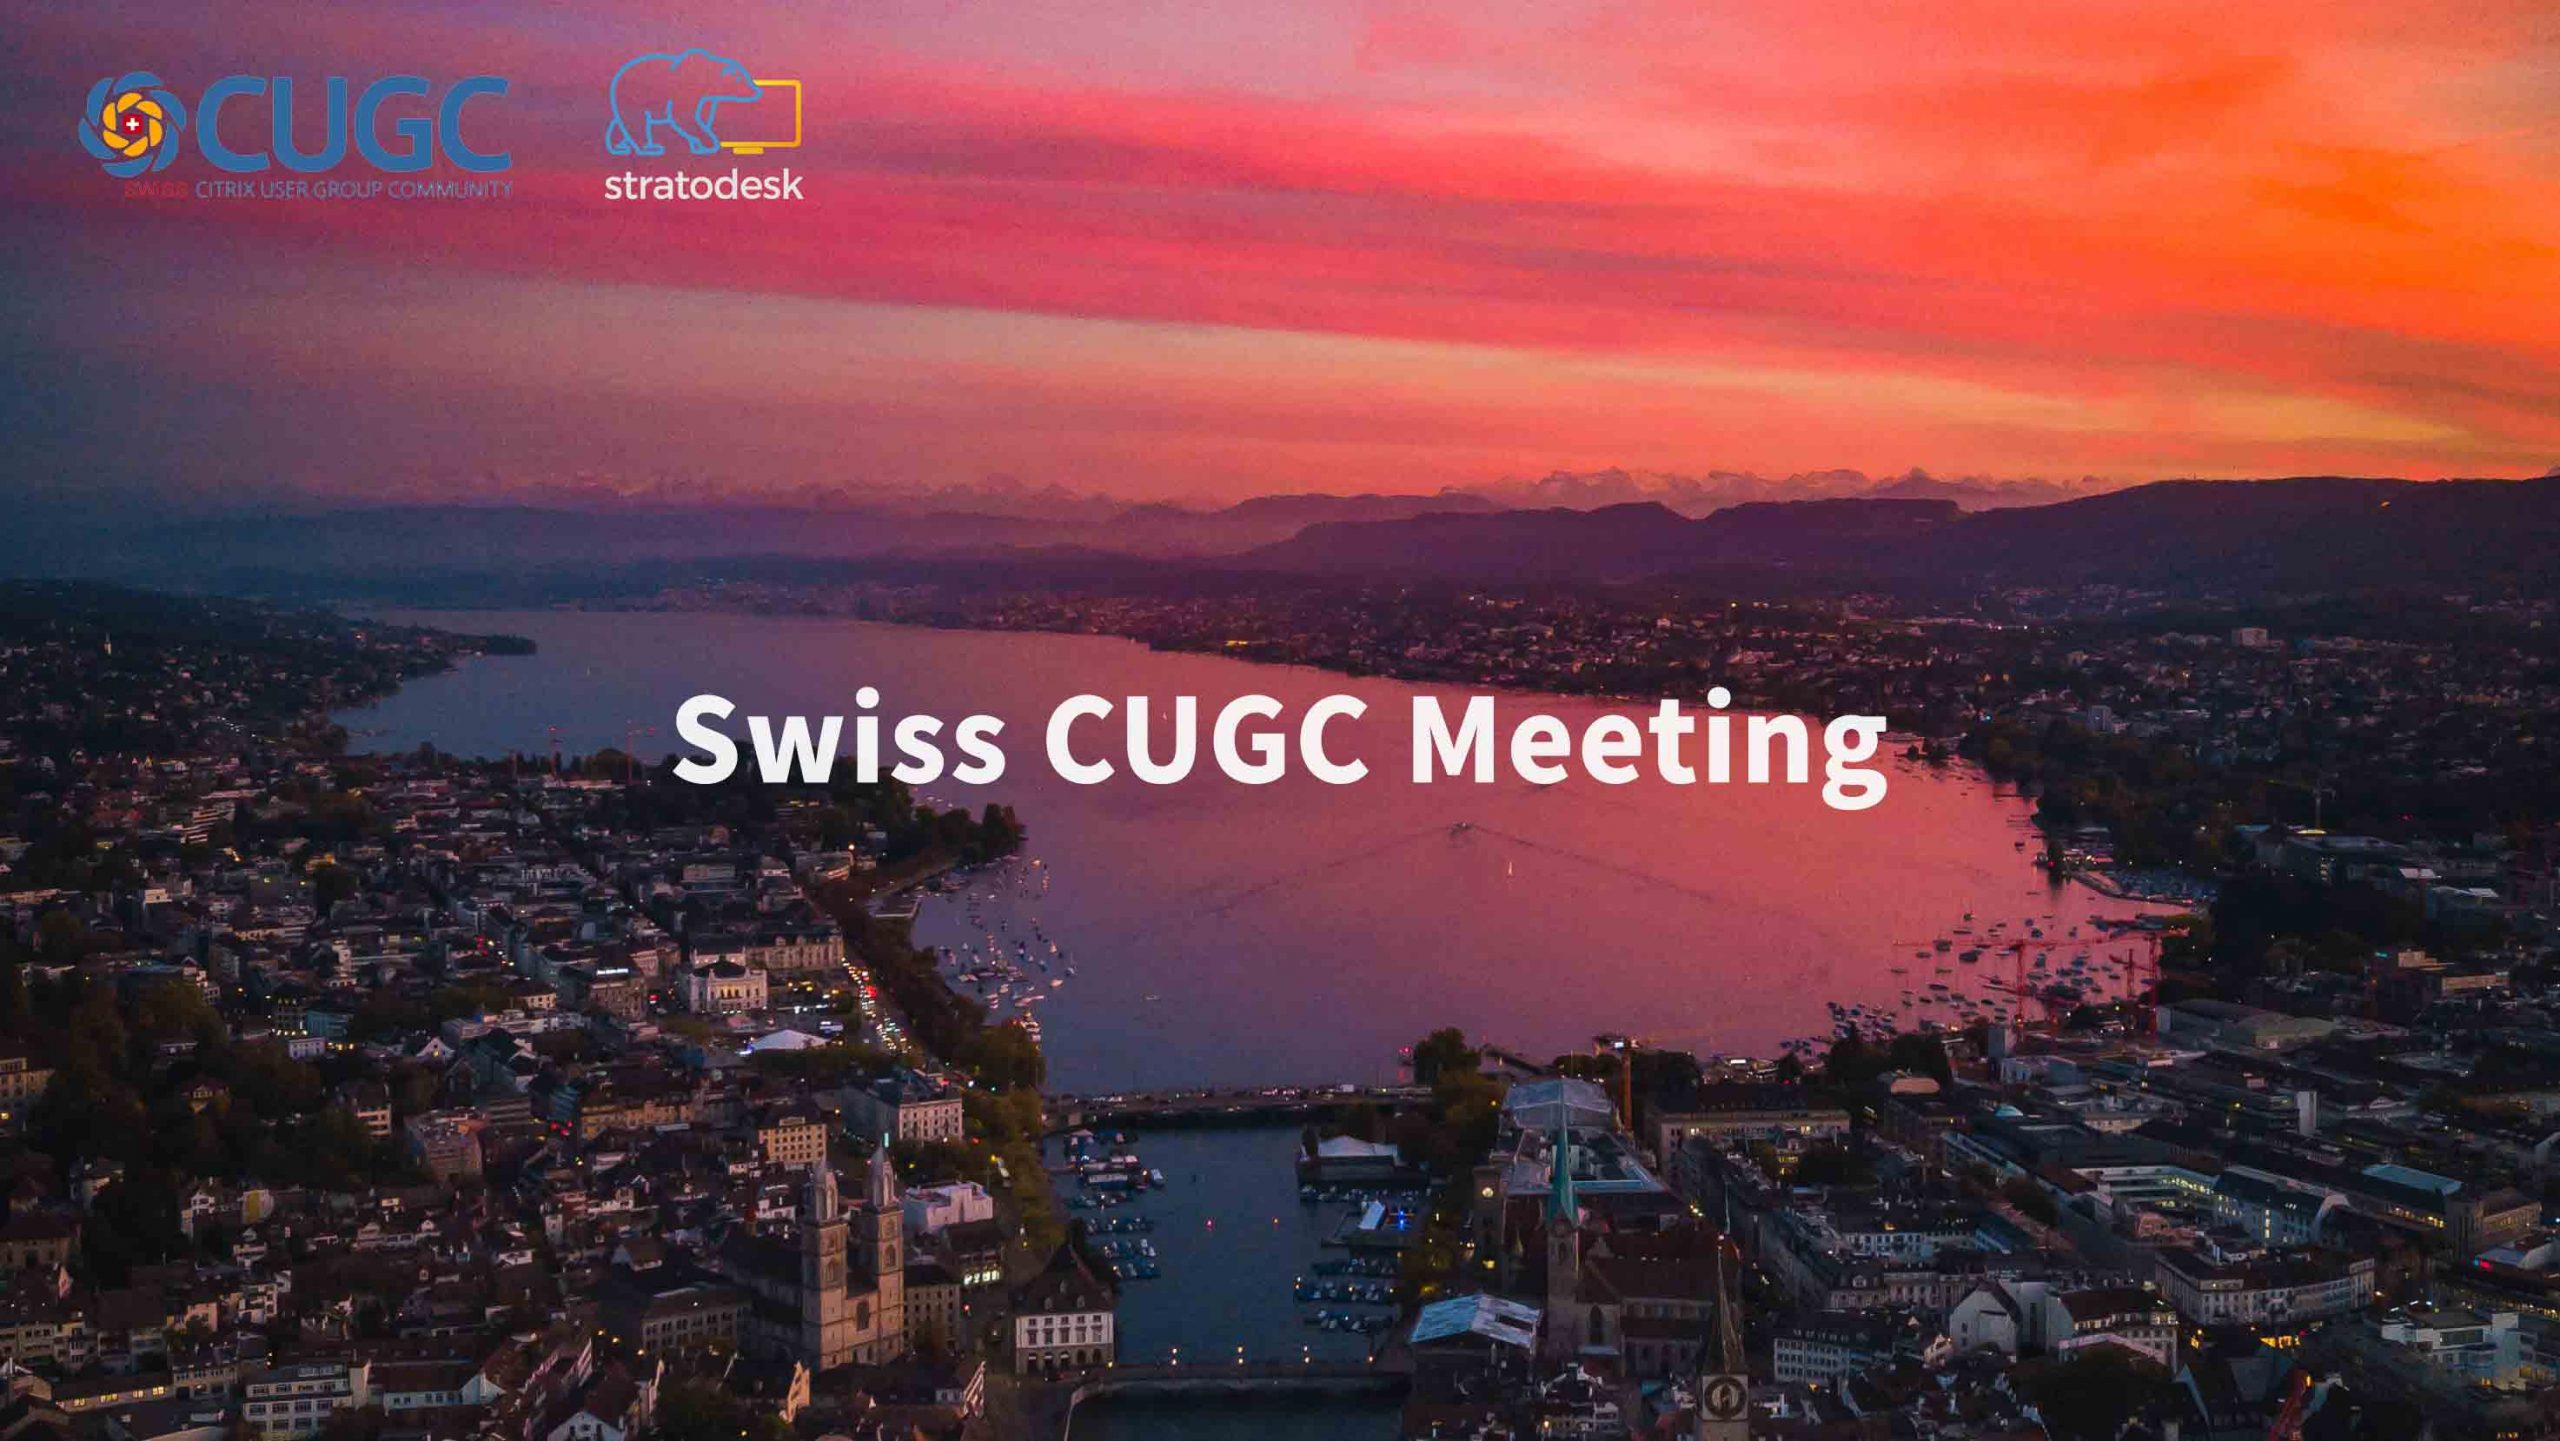 CUGC Meeting Switzerland/Europe